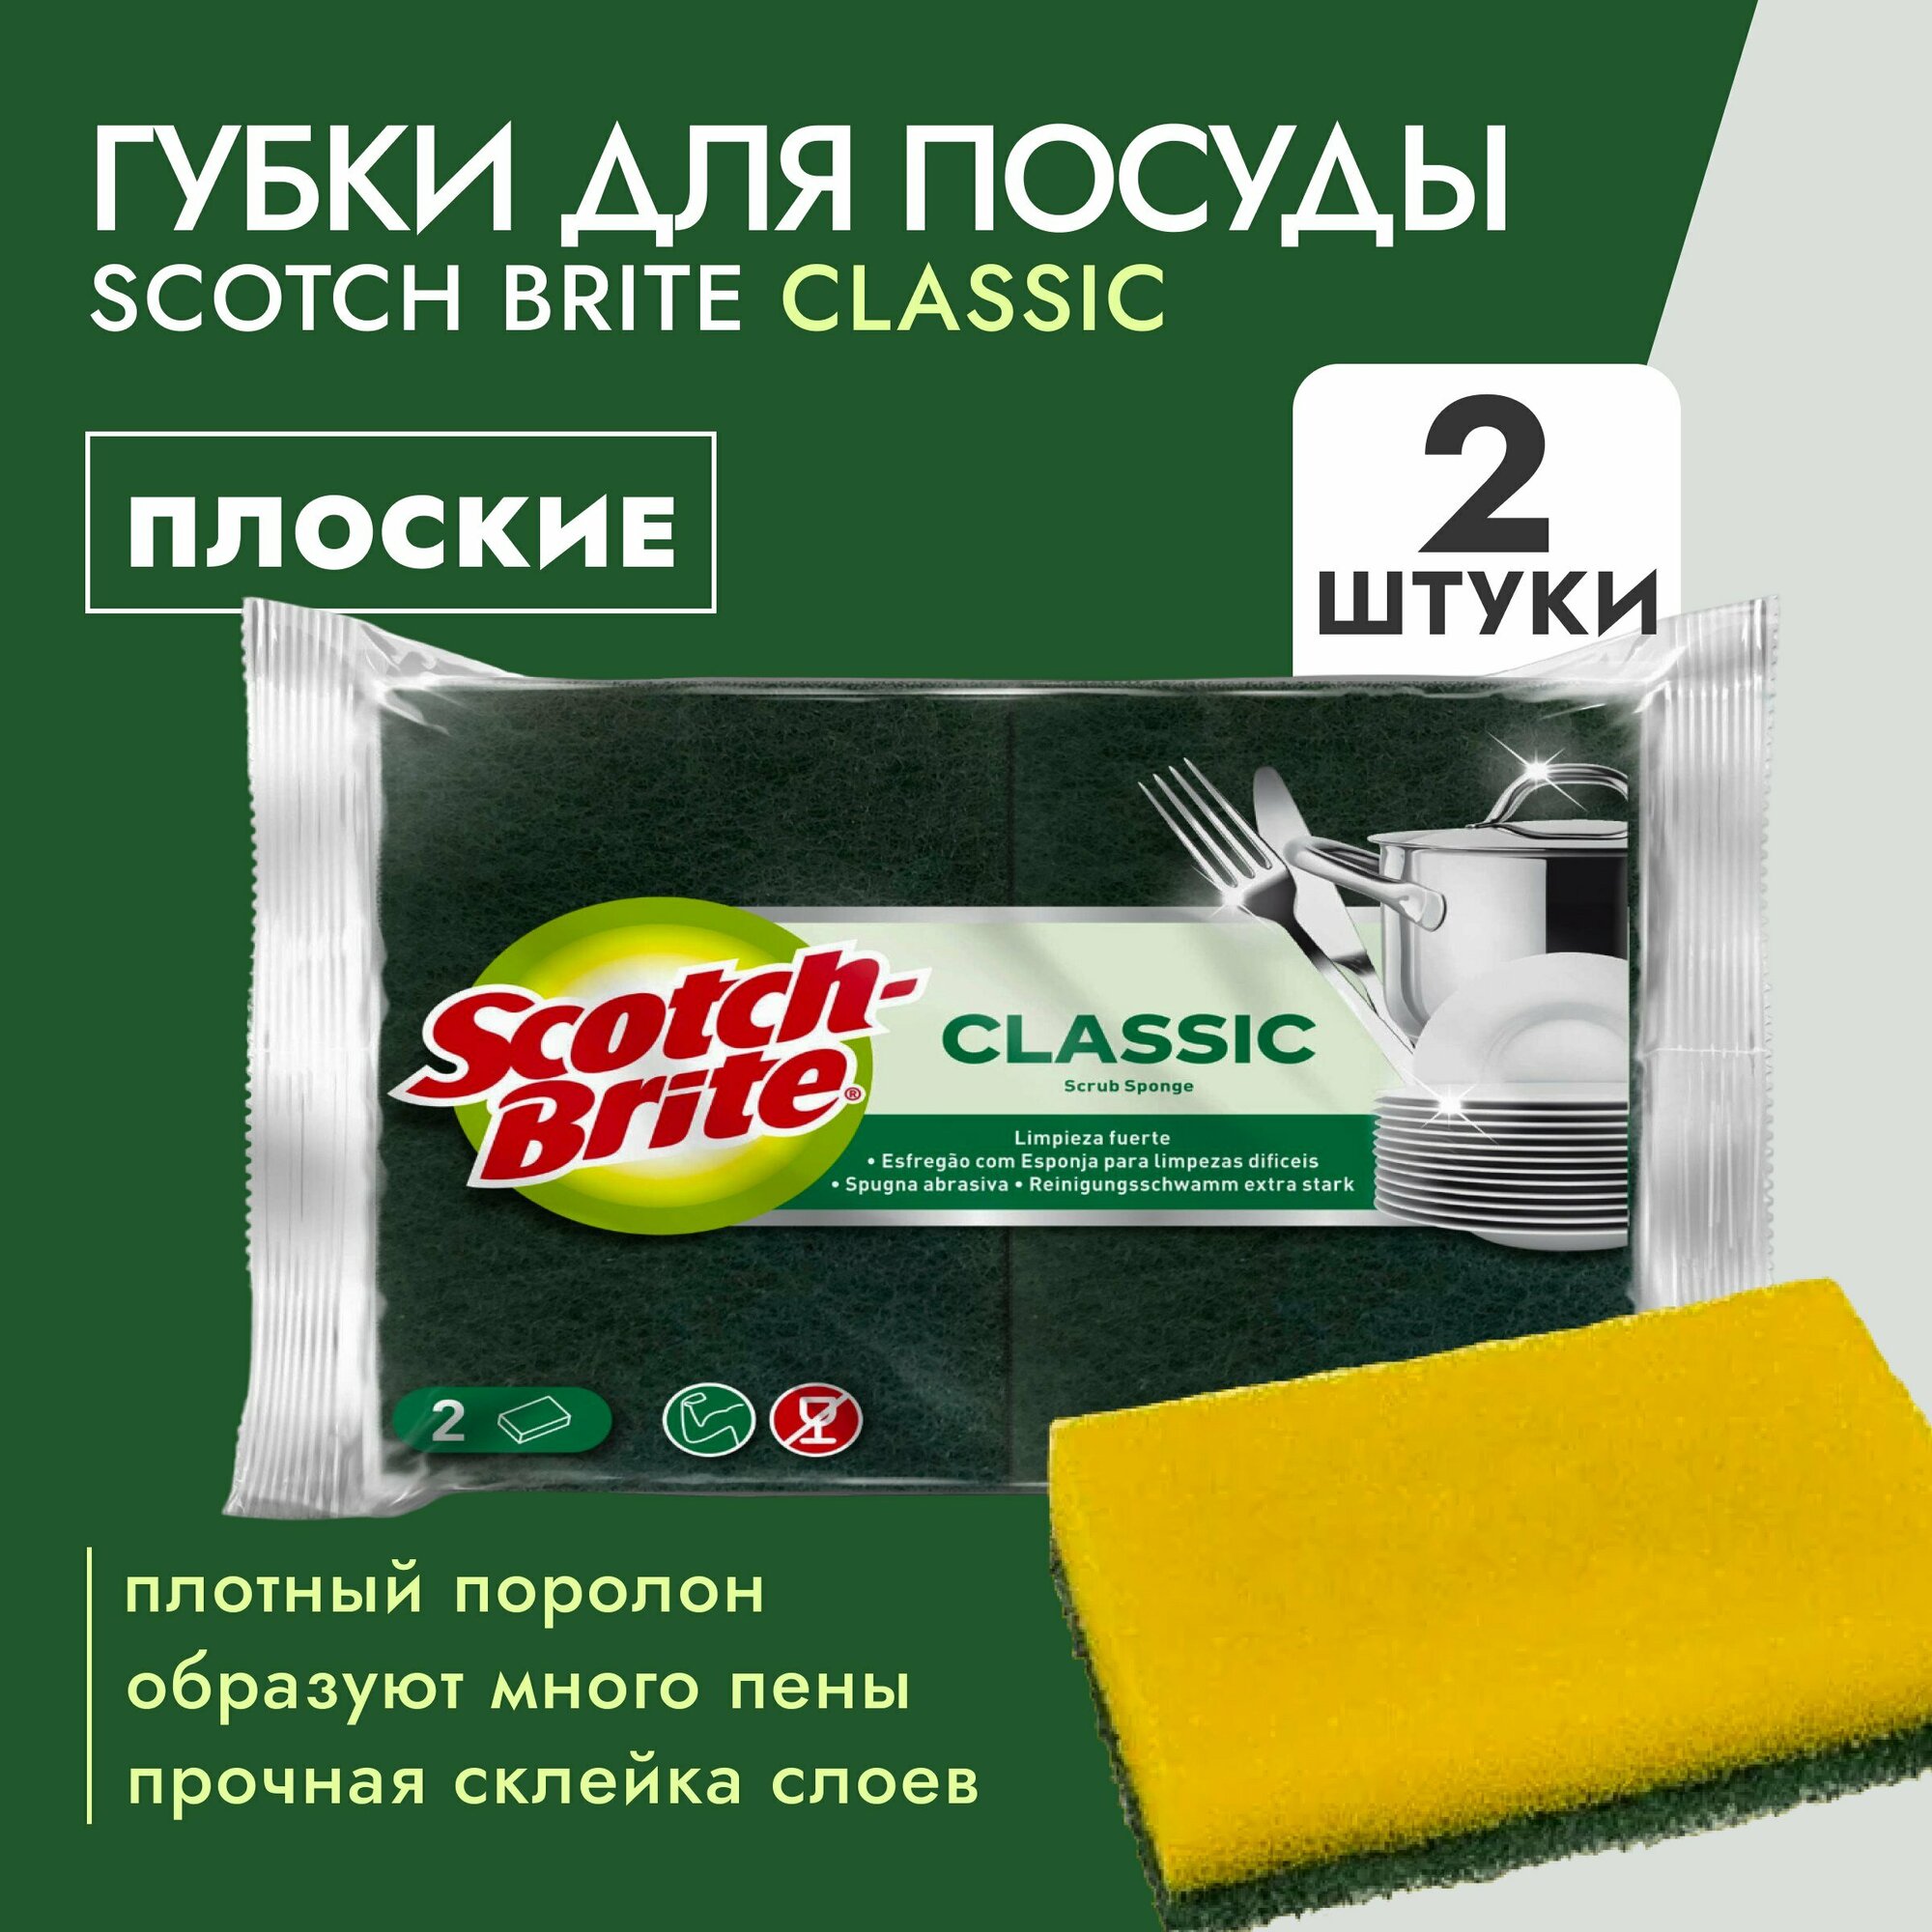 Губки для посуды Scotch-Brite Classic (4764), плоская 2шт/уп, 1 шт